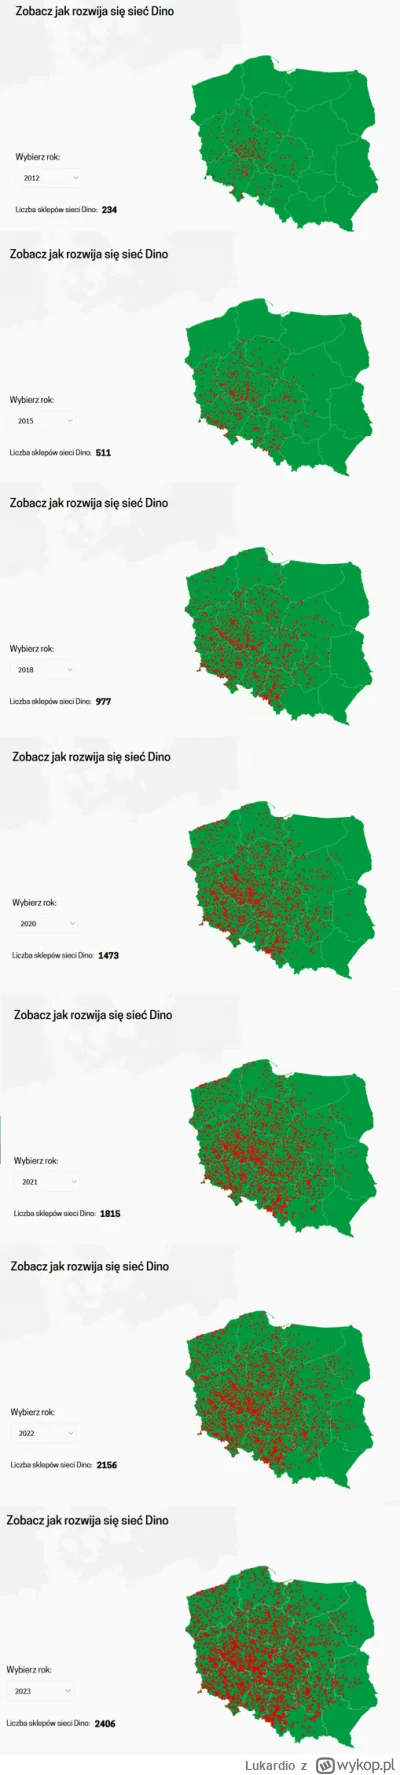 Lukardio - Mapa sieci sklepów #dino

https://grupadino.pl/

widać że brak centra logi...